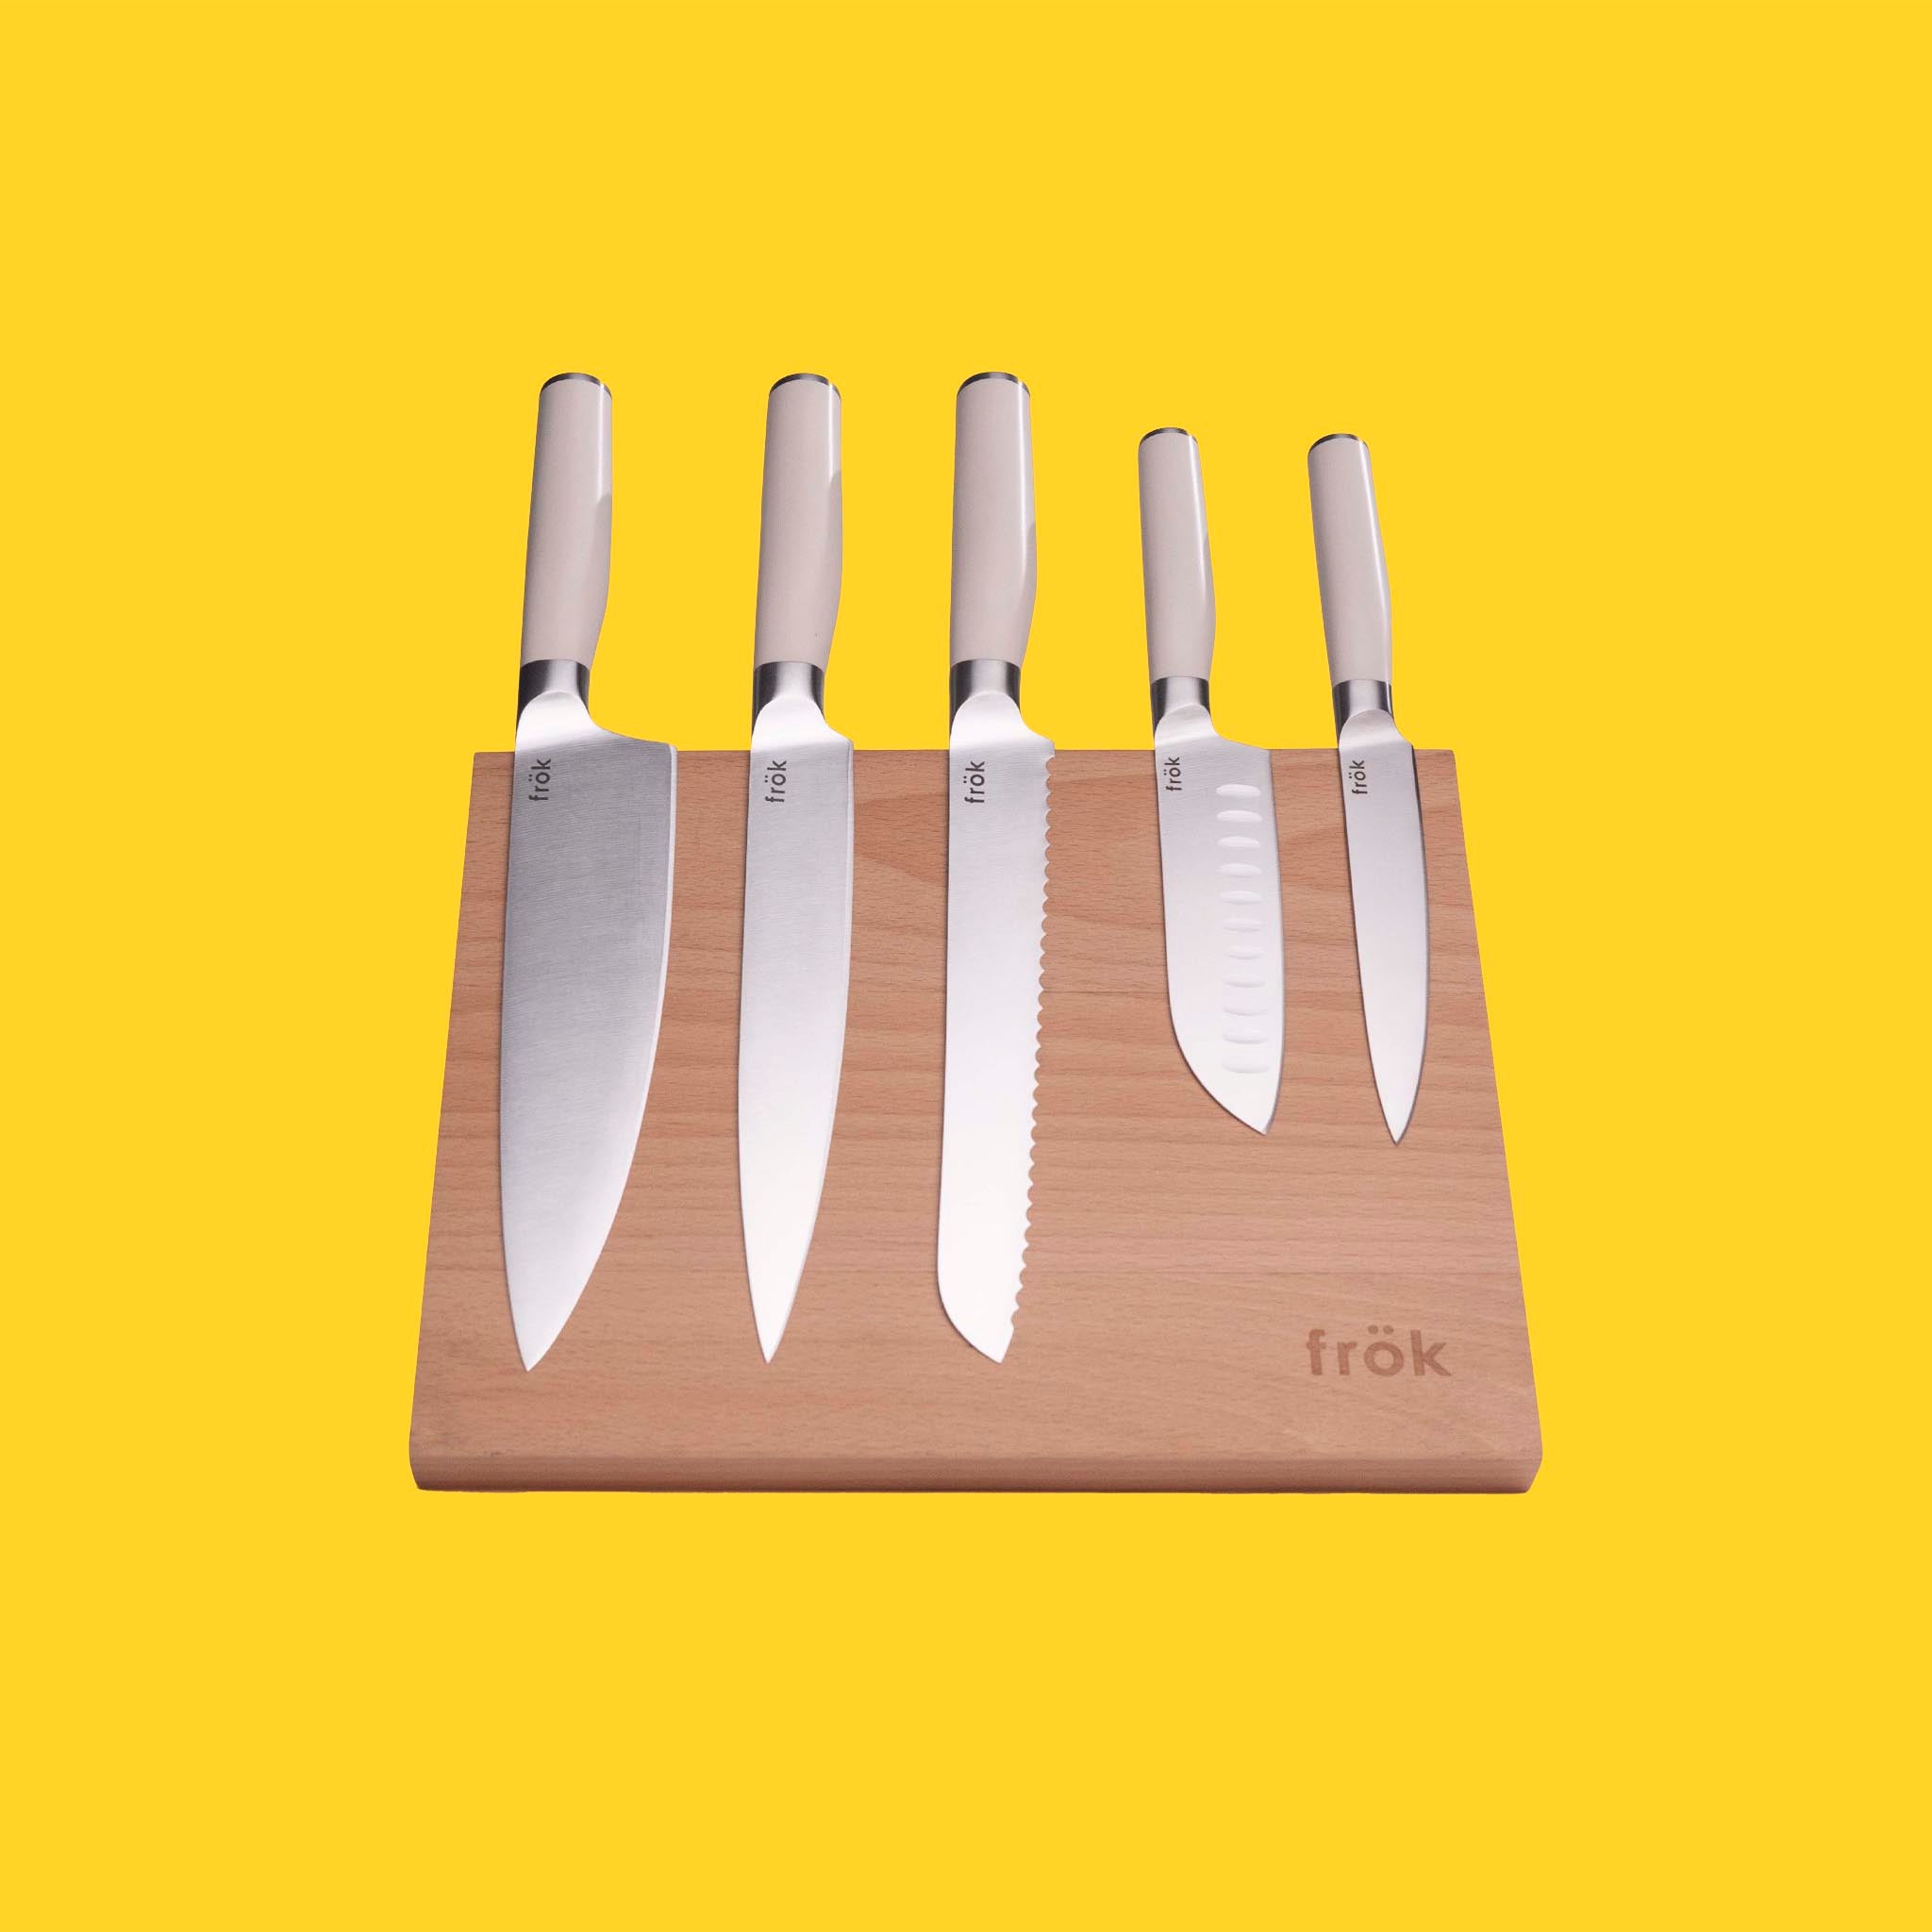 6 Piece Knife Set – frök